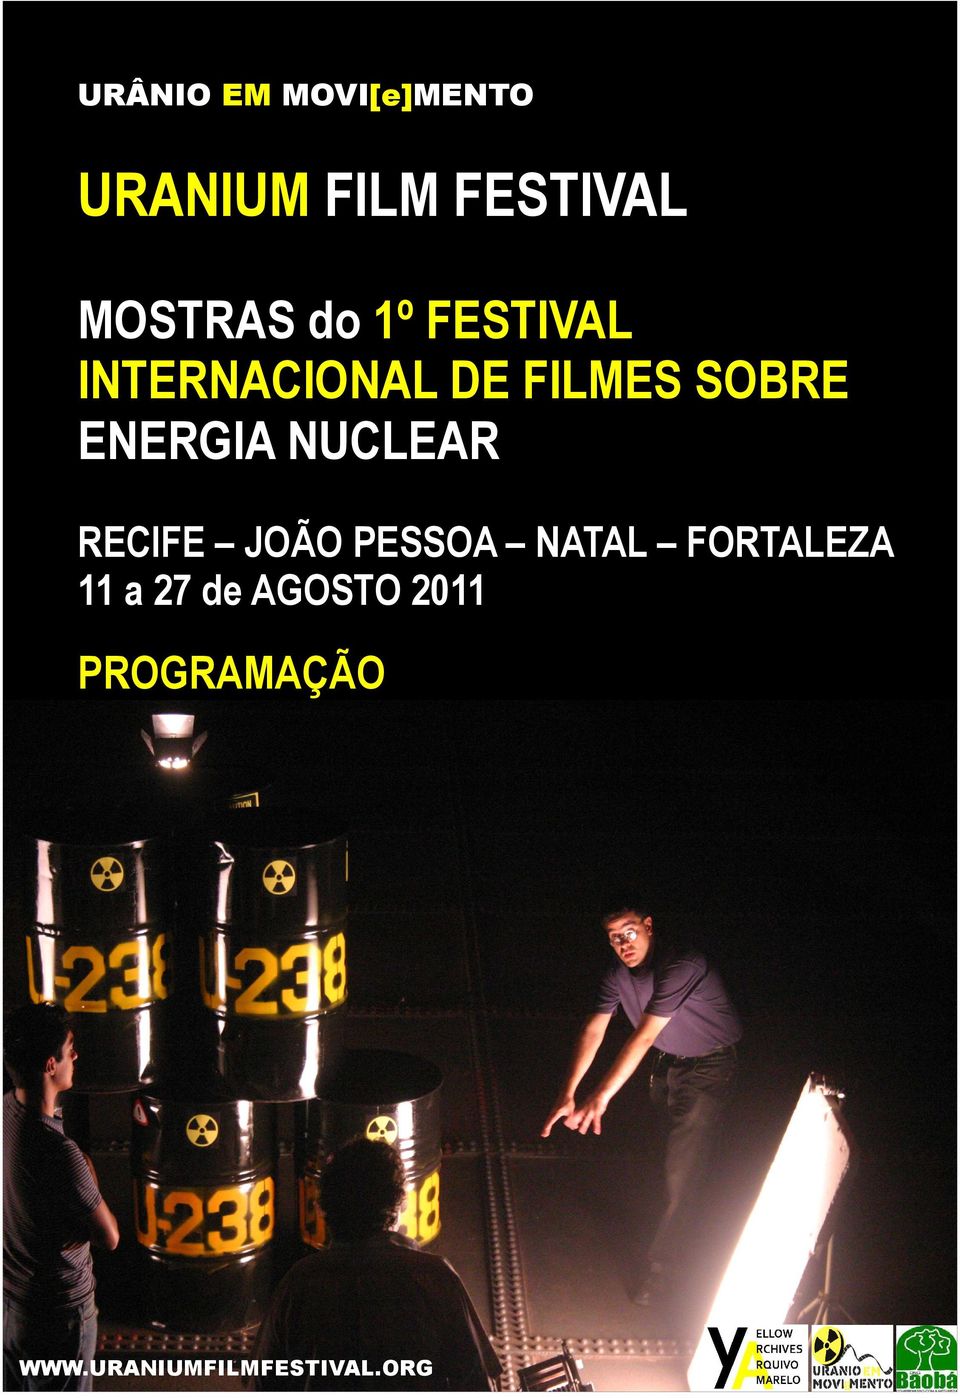 RECIFE JOÃO PESSOA NATAL FORTALEZA 11 a 27 de AGOSTO 2011